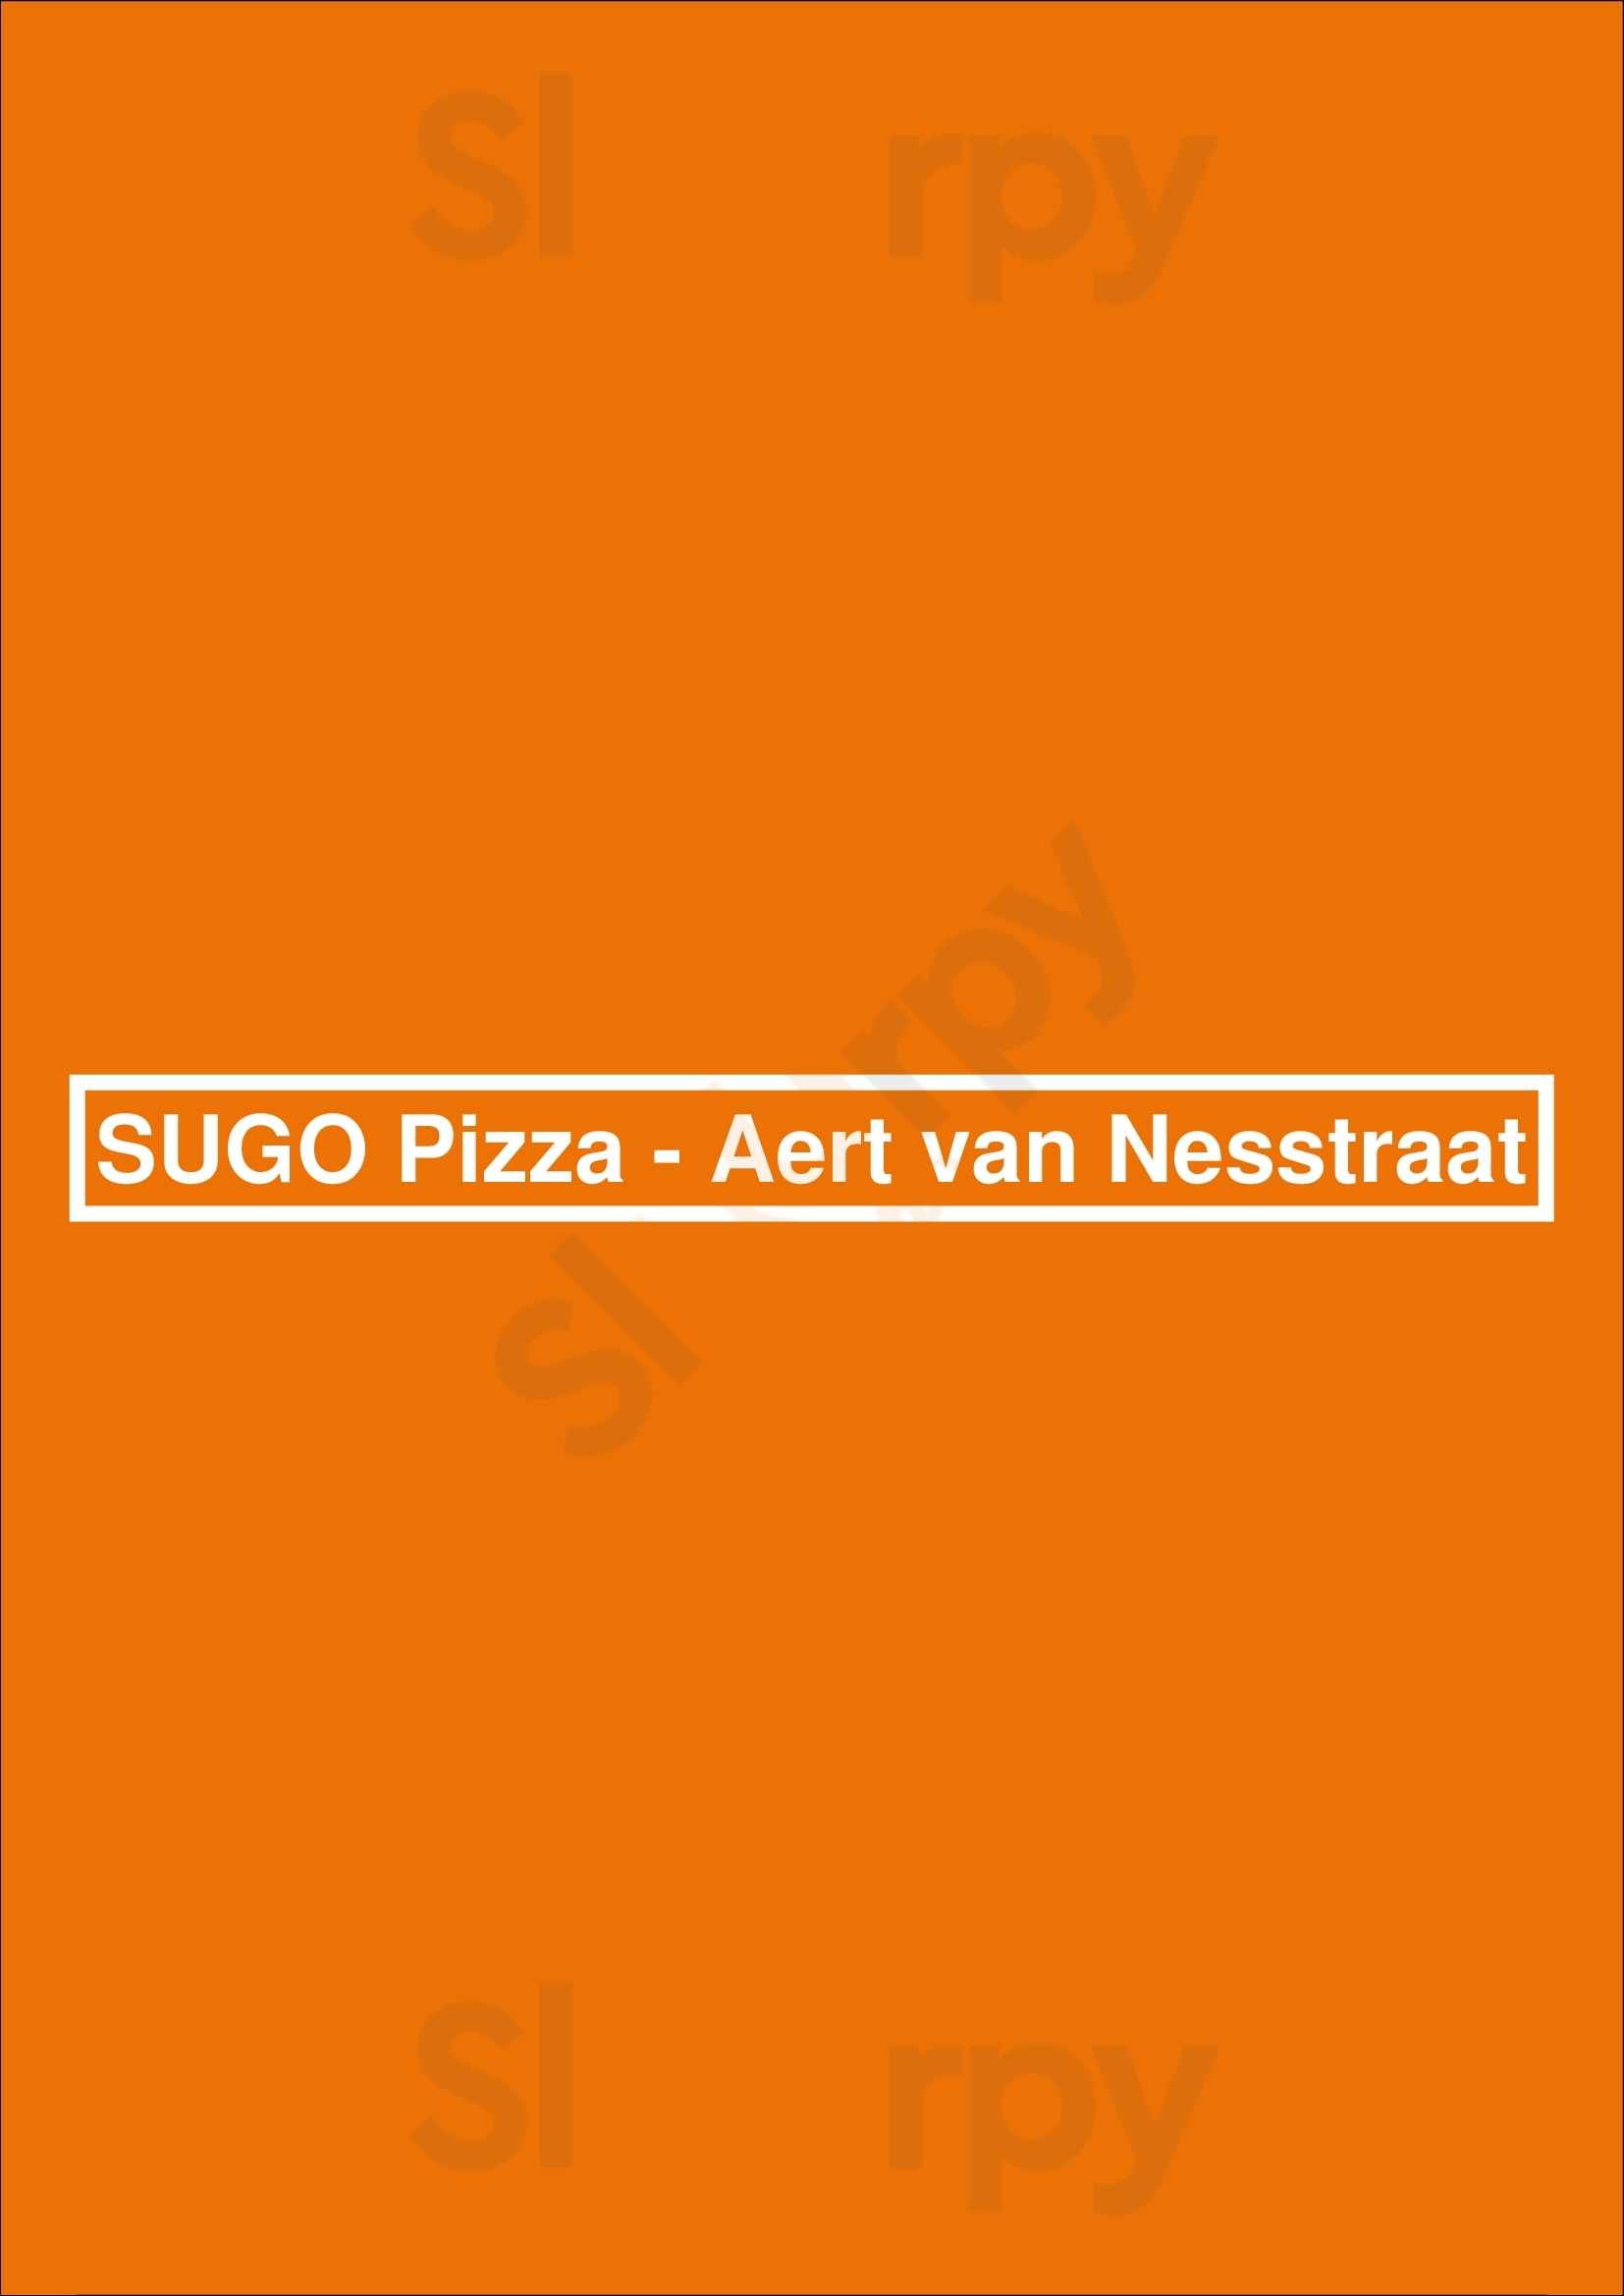 Sugo Pizza - Aert Van Nesstraat Rotterdam Menu - 1